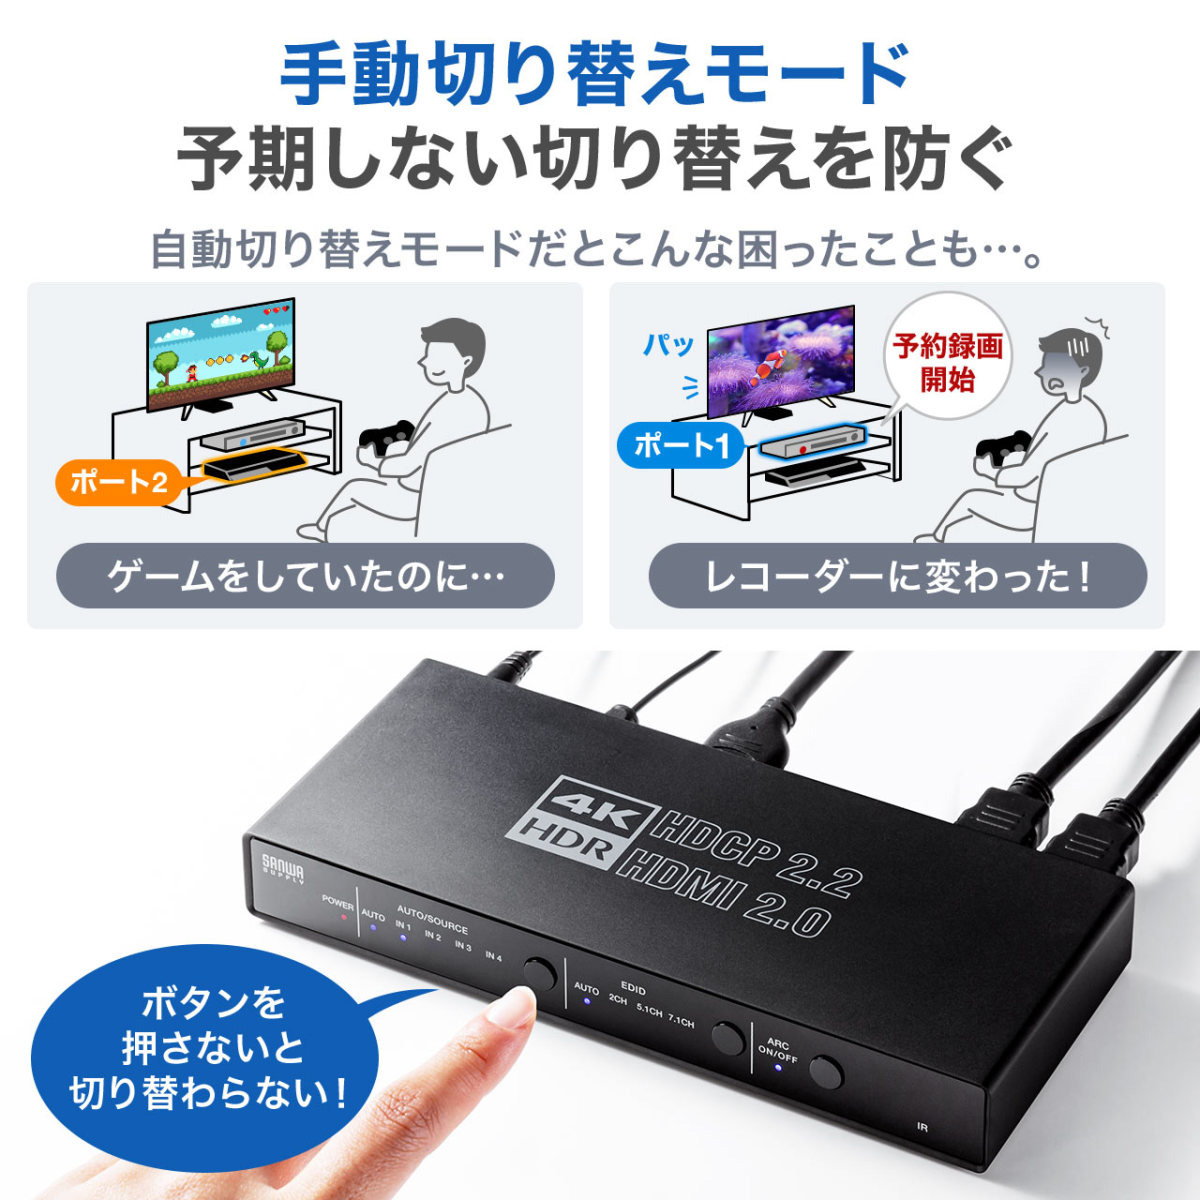 訳あり サンワダイレクト HDMI切替器 3入力1出力 手動切替 自動切り替えなし 電源不要 フルHD HDCP対応 400-SW018 